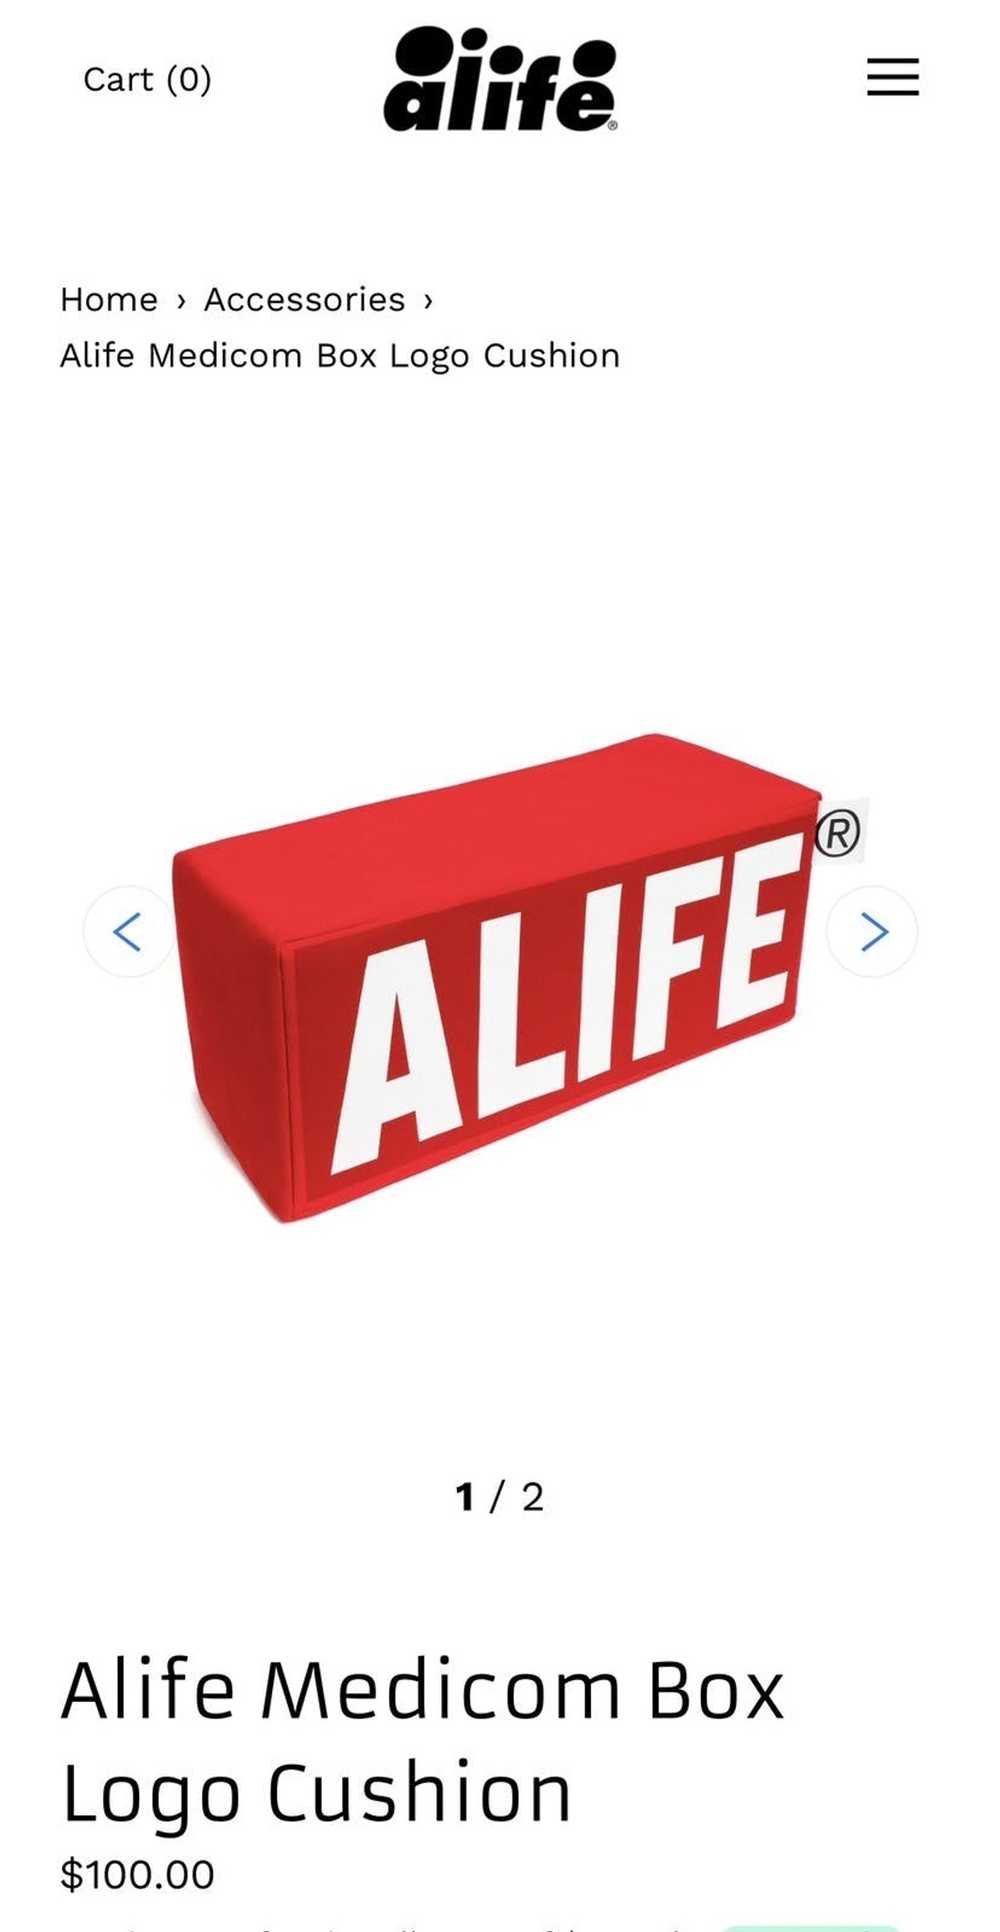 Alife × Medicom Toy Alife Medicom Box Logo Cushion - image 1